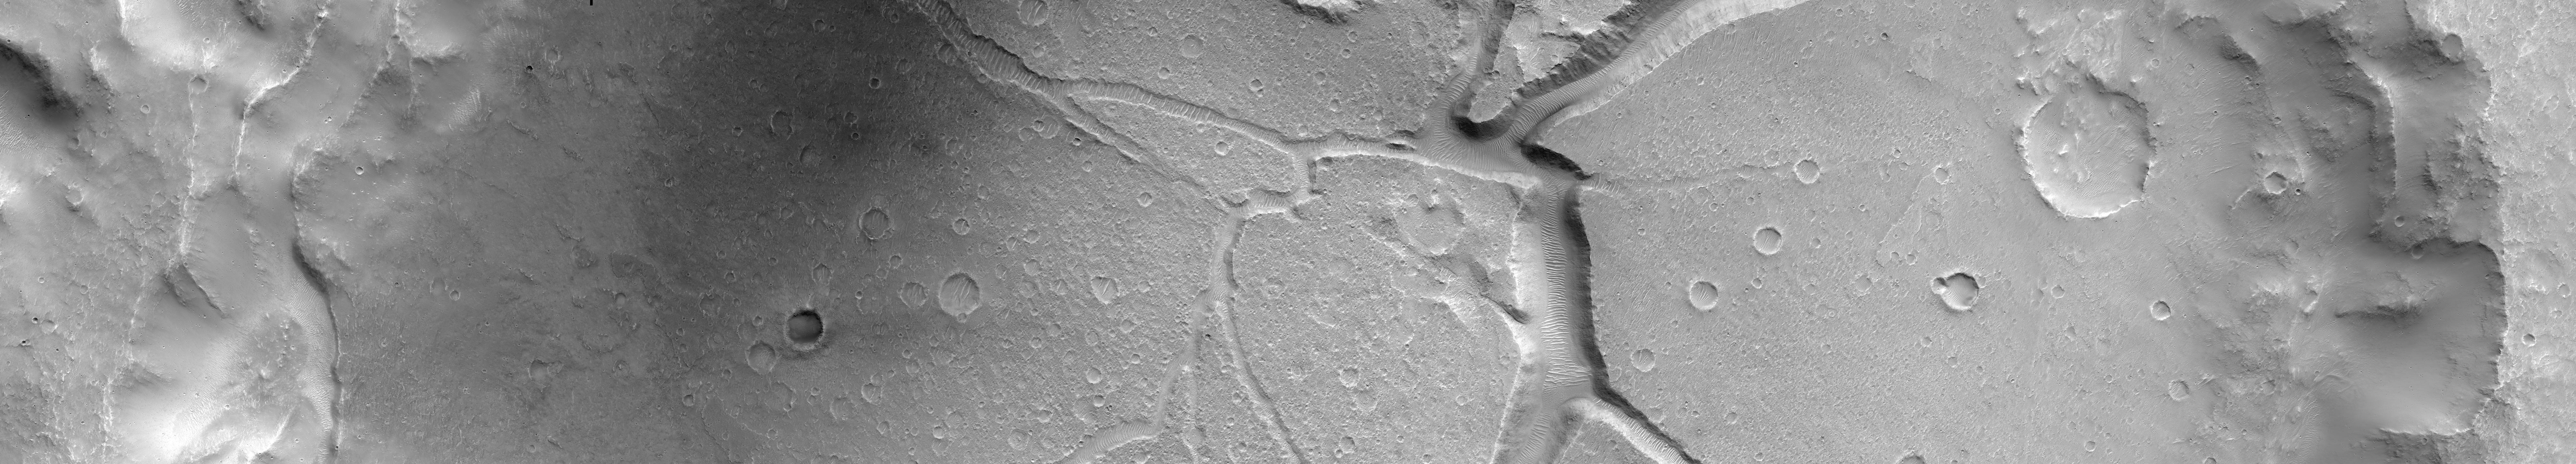 Марс. Фото NASA камерой HiRISE по выбору Сергея Мельникофф. Credit: NASA/JPL/University of Arizona/Alfred McEwen, Sergey Melnikoff.